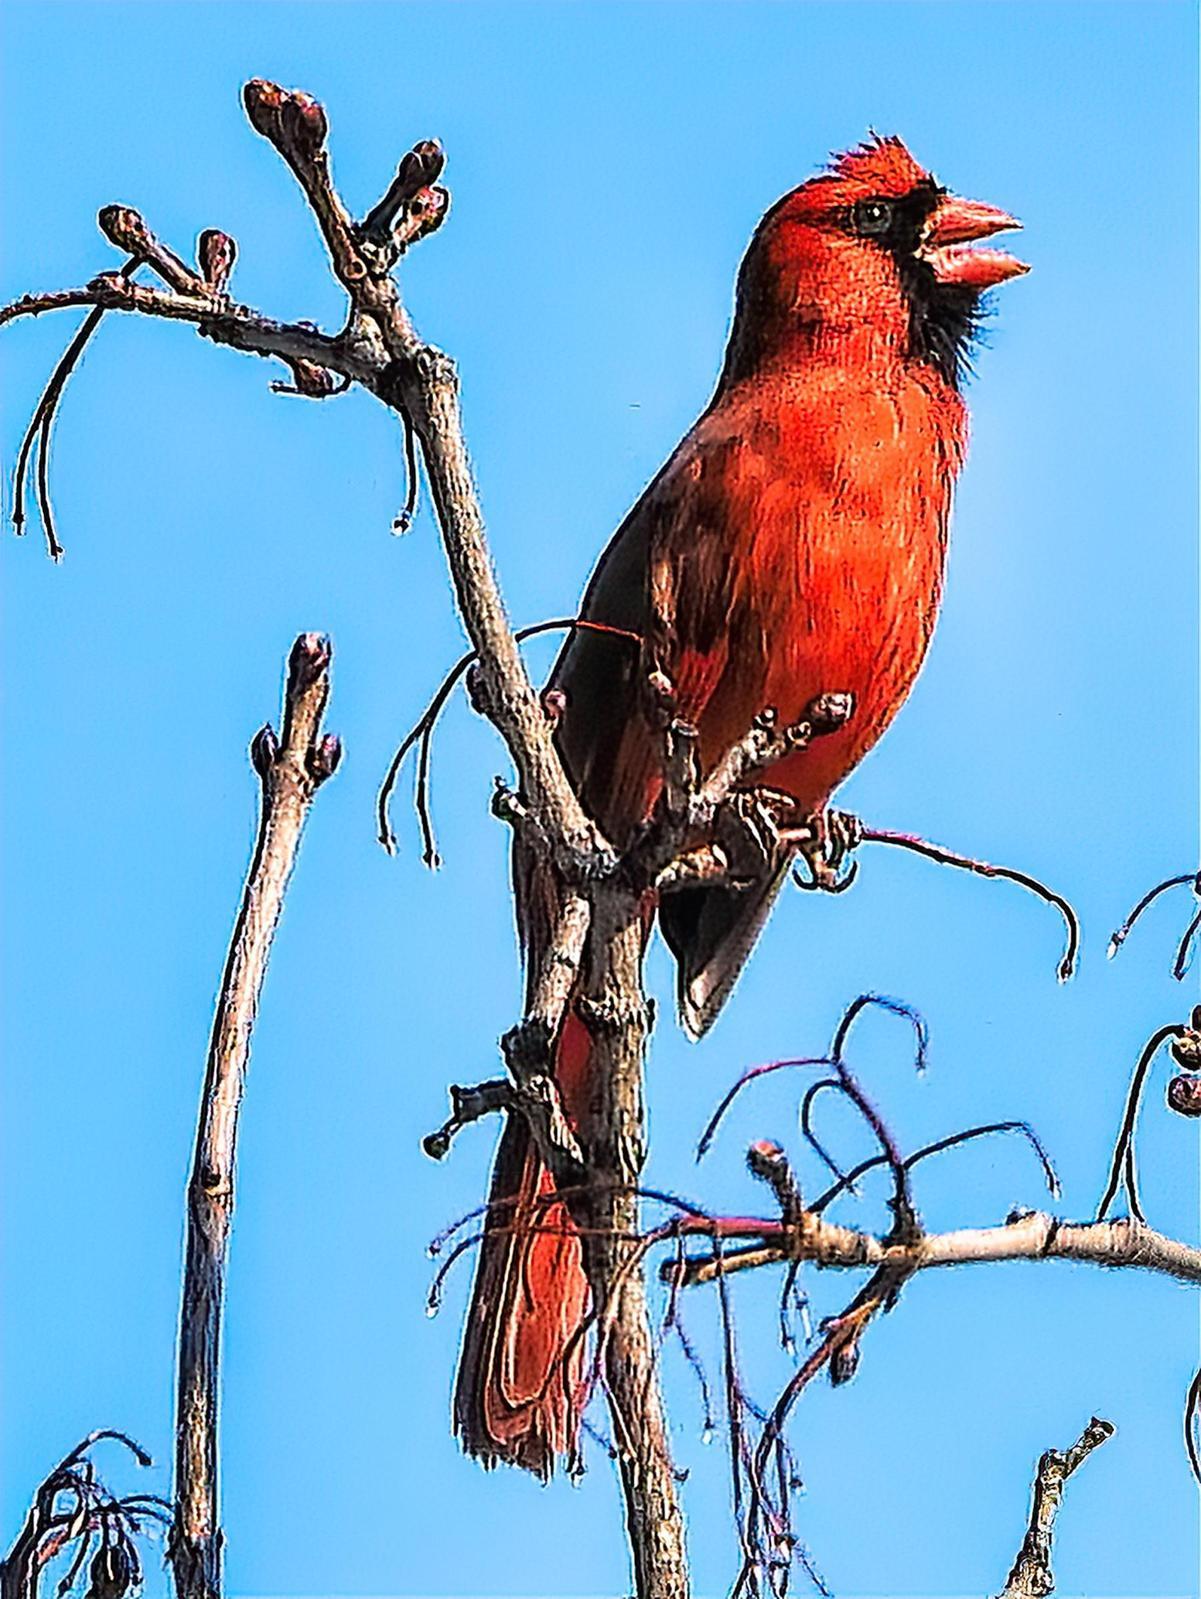 Northern Cardinal Photo by Dan Tallman